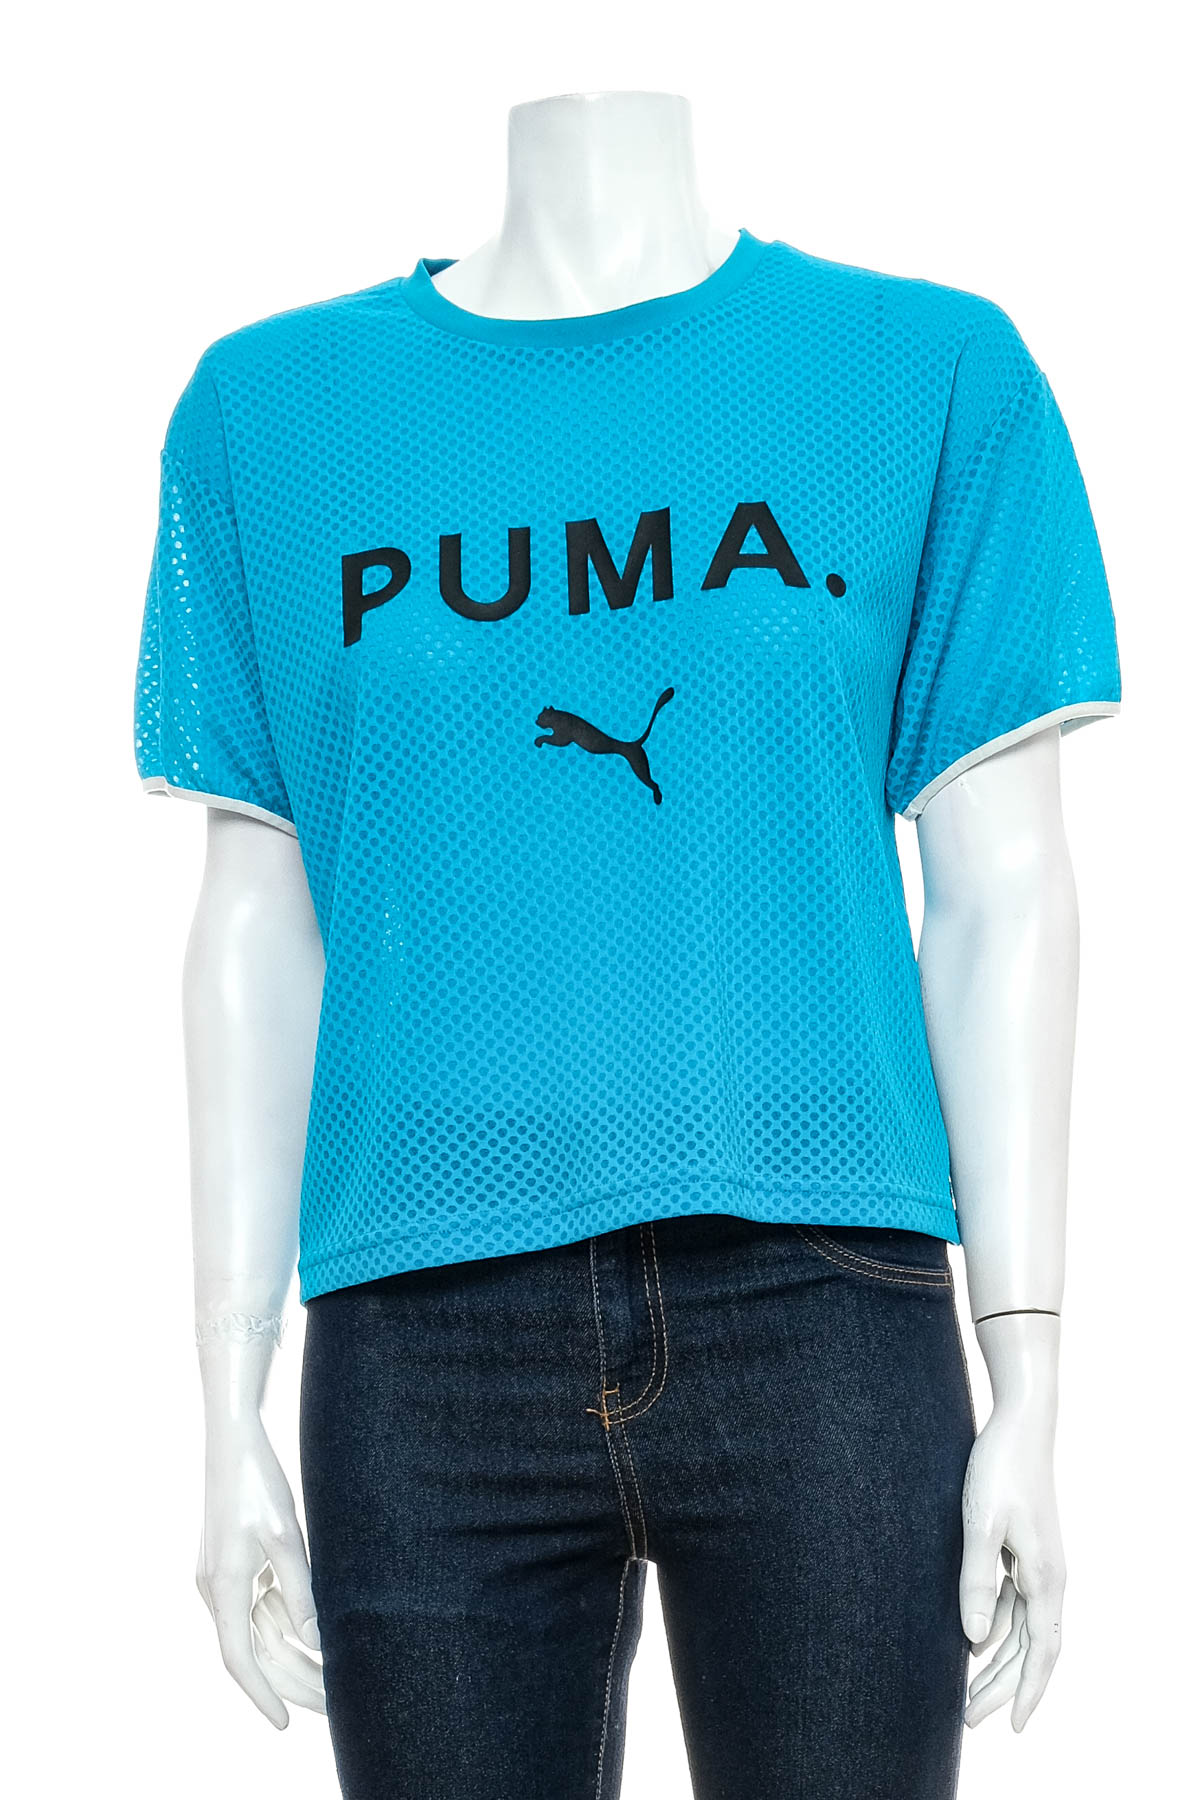 Дамска тениска - PUMA - 0